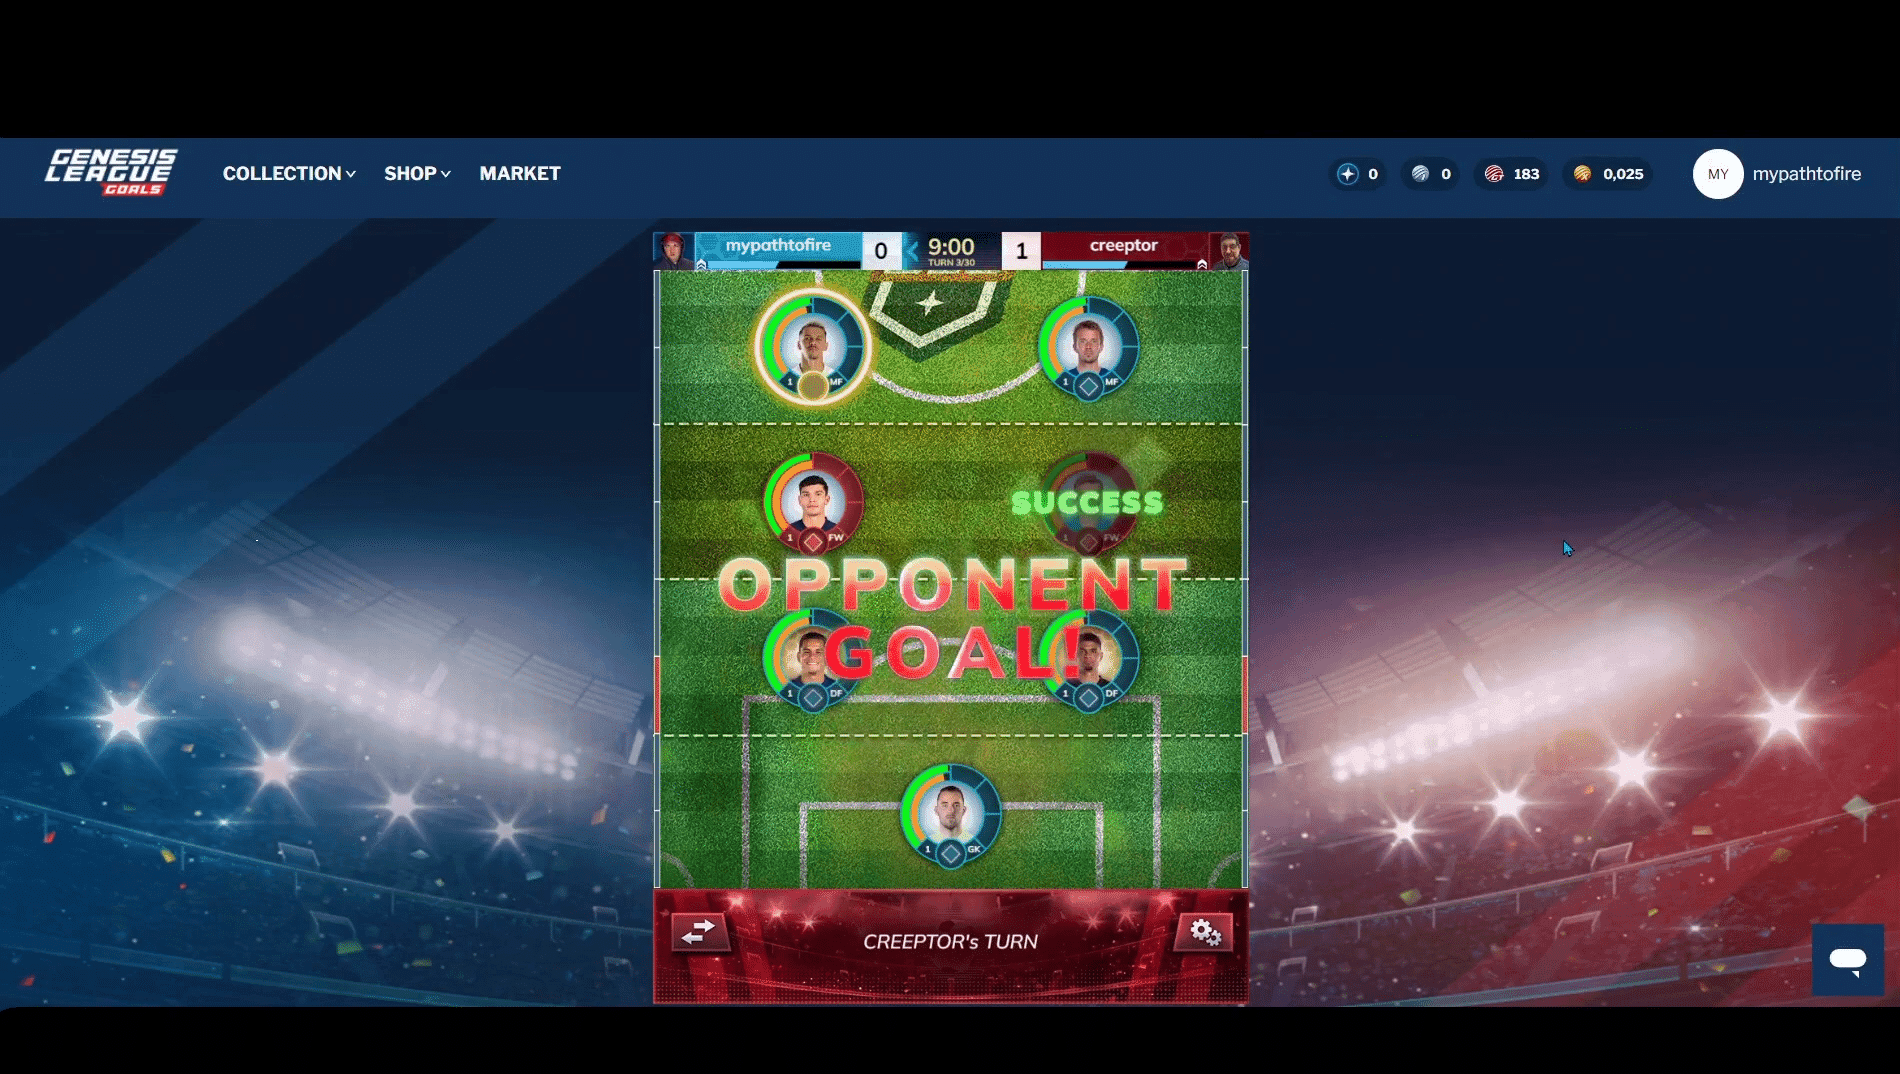 Genesis League Goals offre une passerelle officielle pour collecter, concourir et gagner grâce à des cartes à collectionner numériques sous licence mettant en vedette Major Soccer.